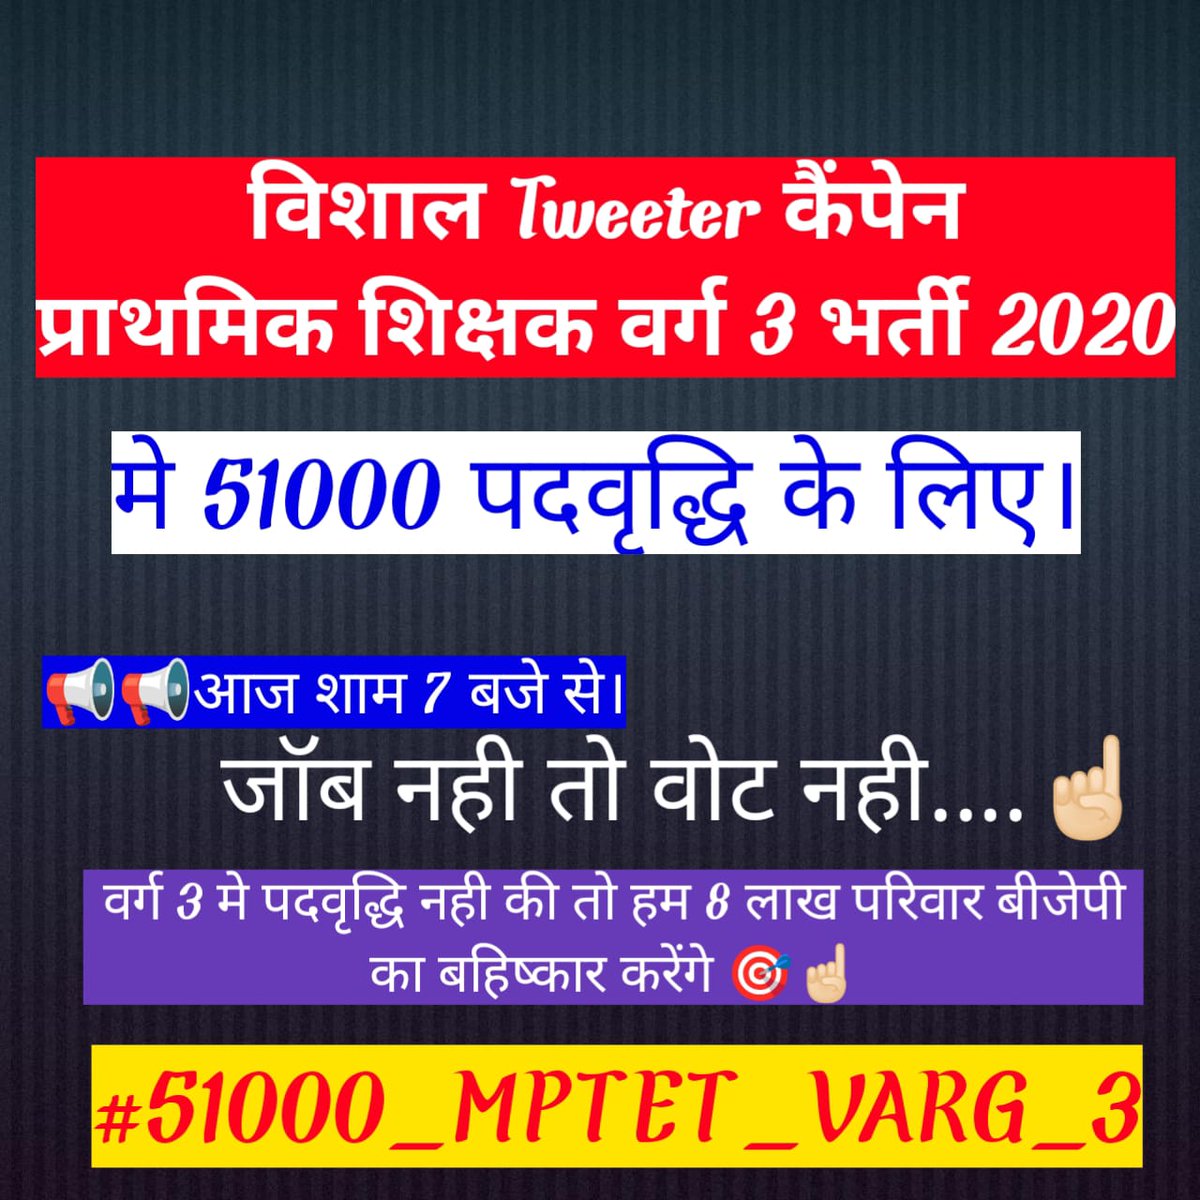 Mptet varg 3 में 51000 पदों की वृद्धि के लिए सभी लोग बड़ी संख्या में ट्वीट करें 🙏🙏🙏🙏
#51000_MPTET_VARG_3